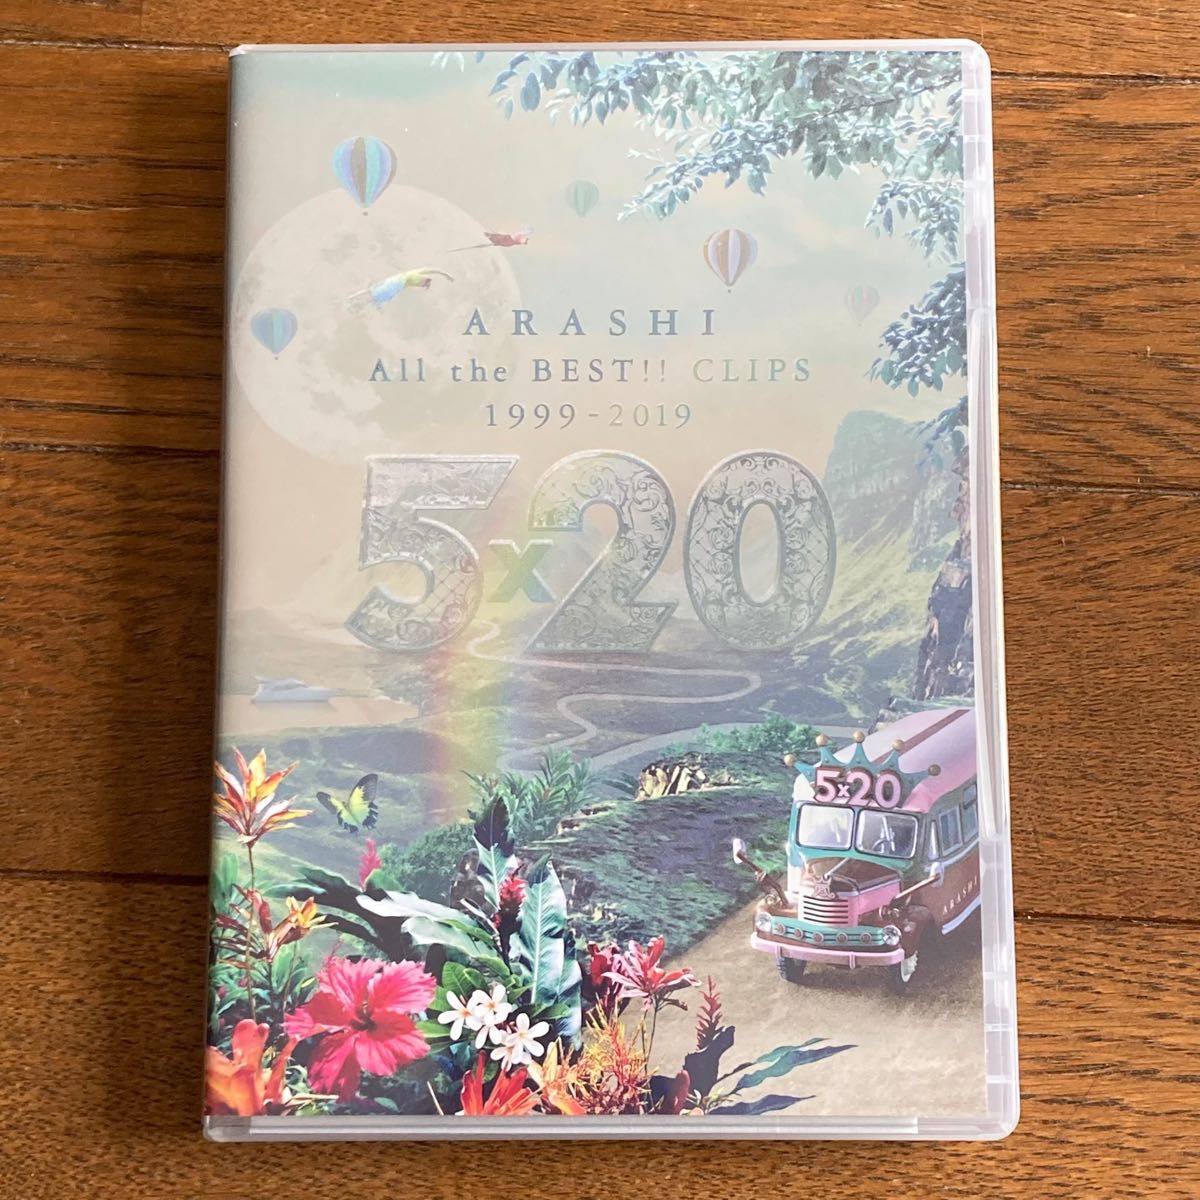 嵐/5×20 All the BEST!!CLIPS 1999-2019〈初回限定盤DVD3枚組〉